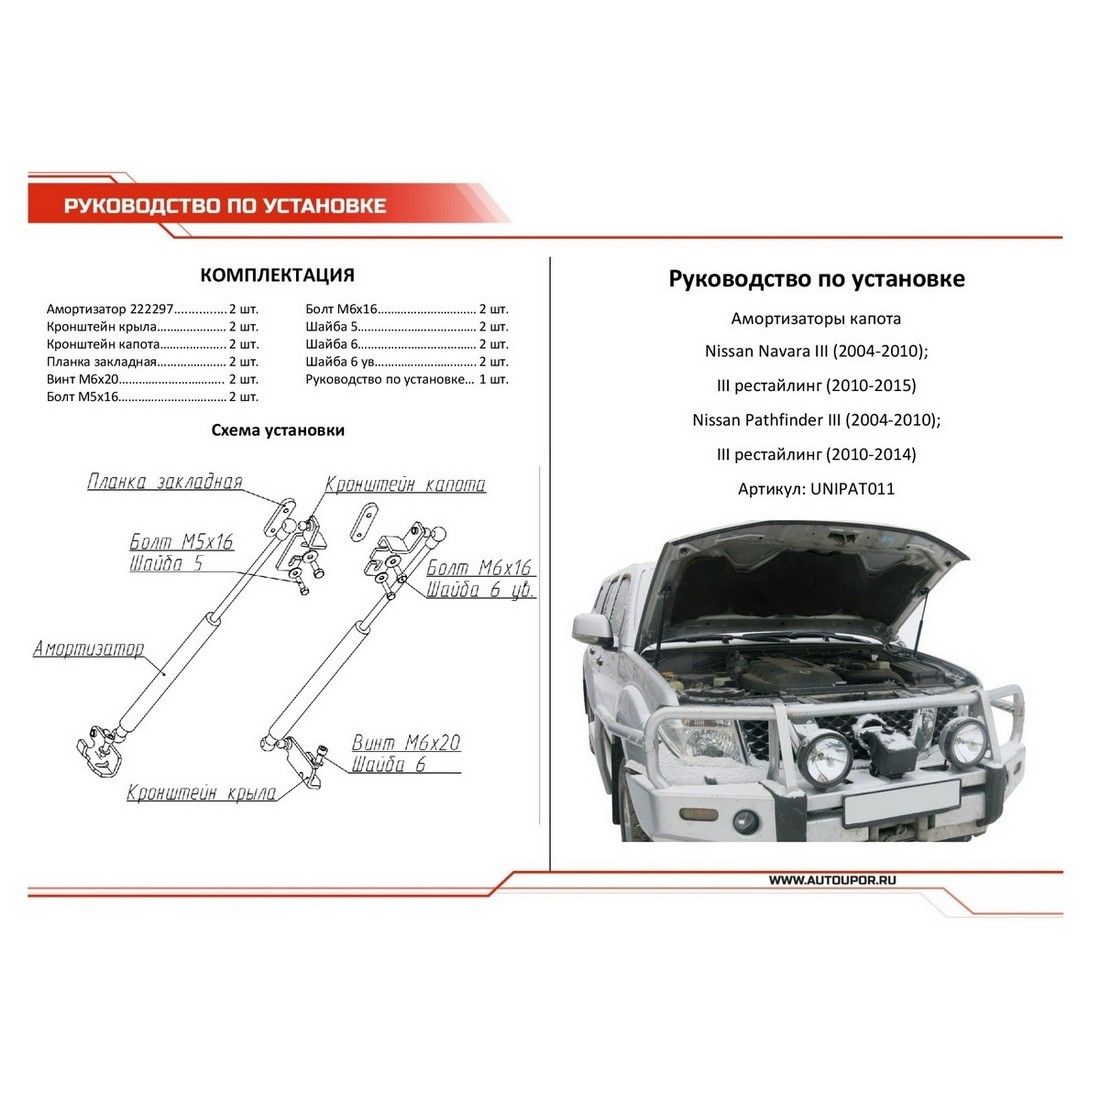 Амортизаторы капота АвтоУПОР (2 шт.) Nissan Pathfinder / Navara (2004-2010 2010-2014/2004-2010 201 unipat011 АвтоУпор